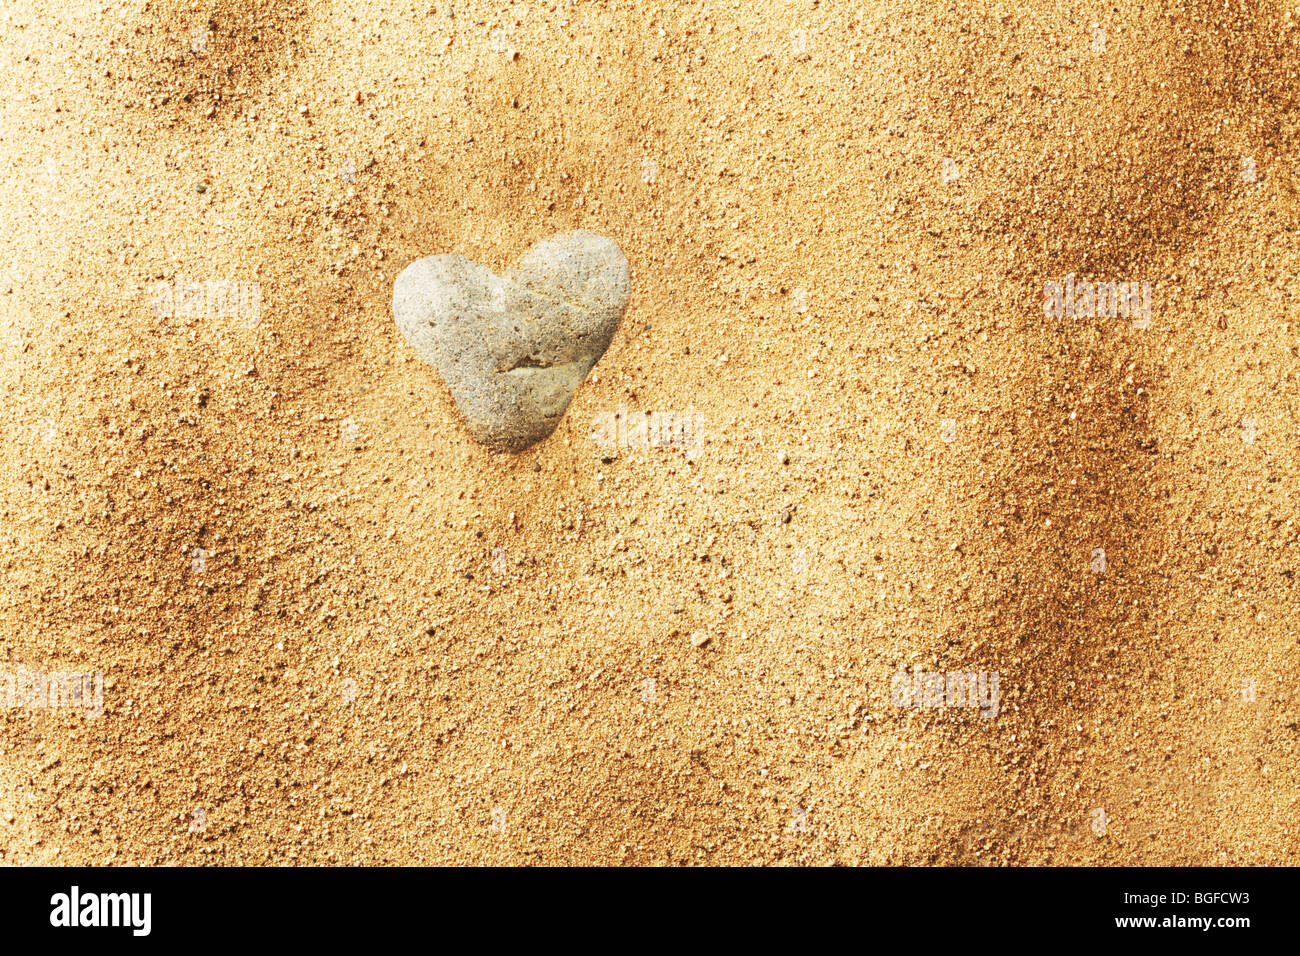 Piedra en forma de corazón en la arena Foto de stock